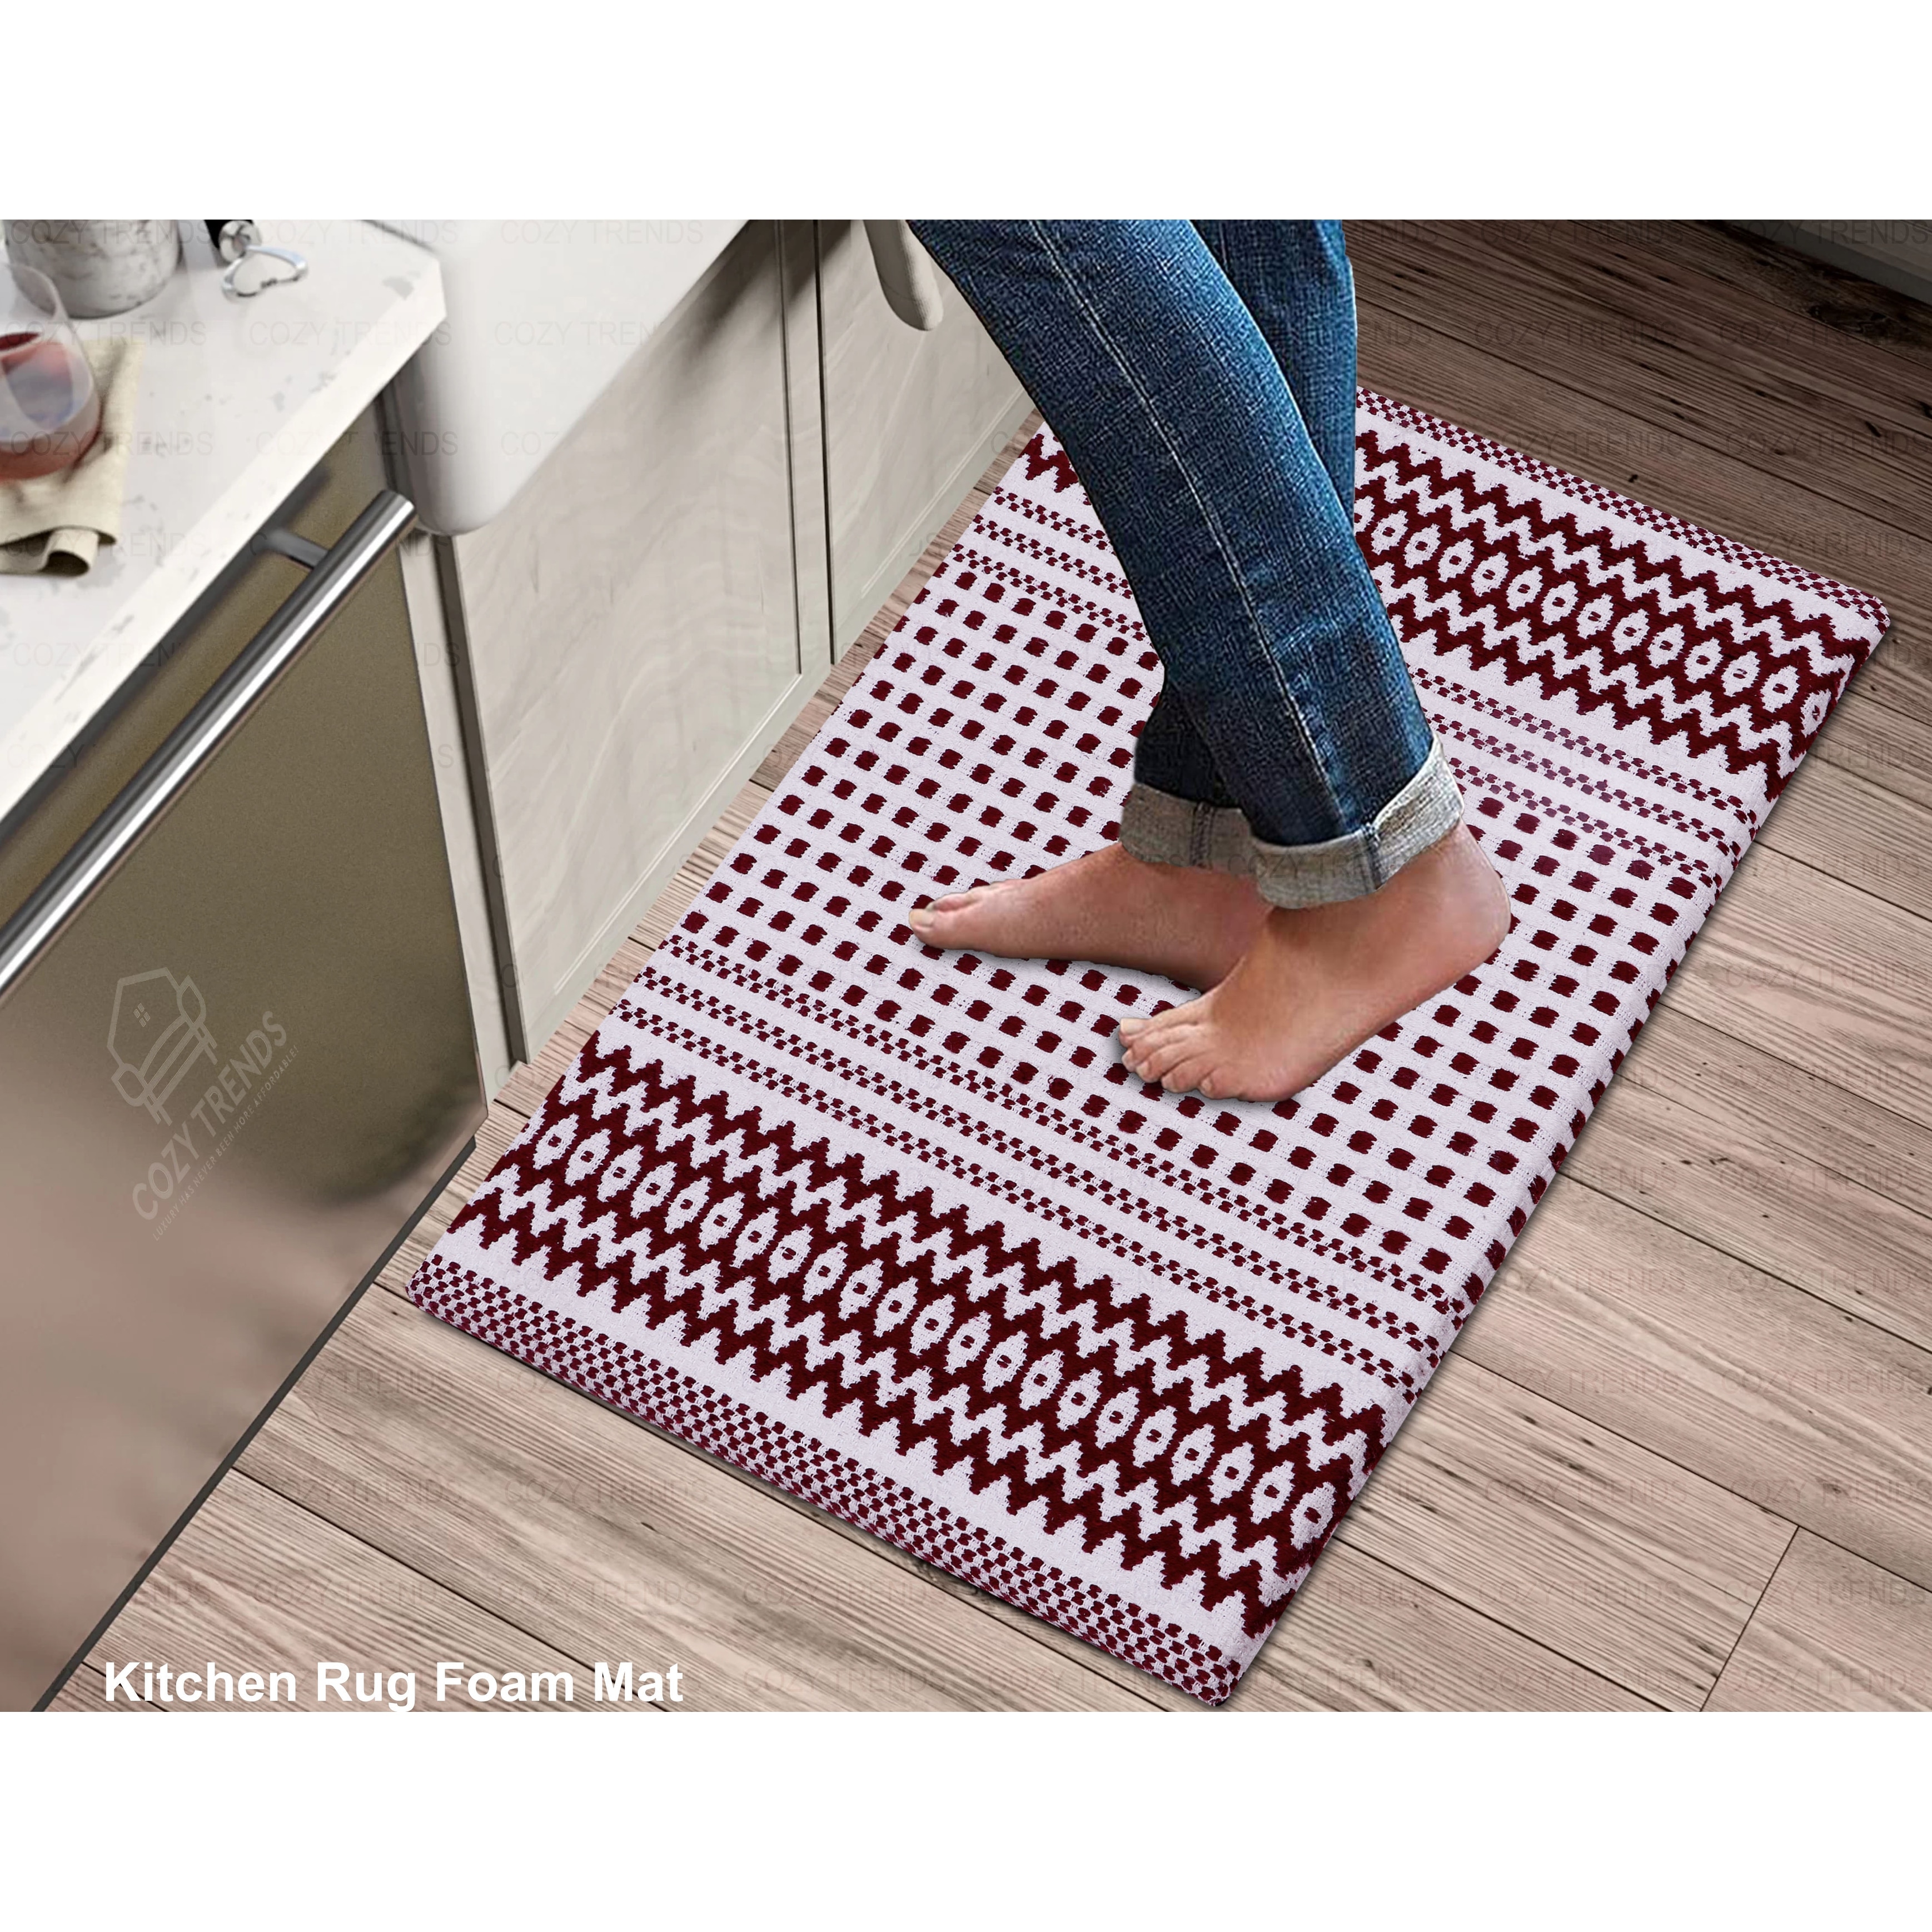 Cushioned Bathroom Floor Mat for Sliding Door - Soft Foot Comfort